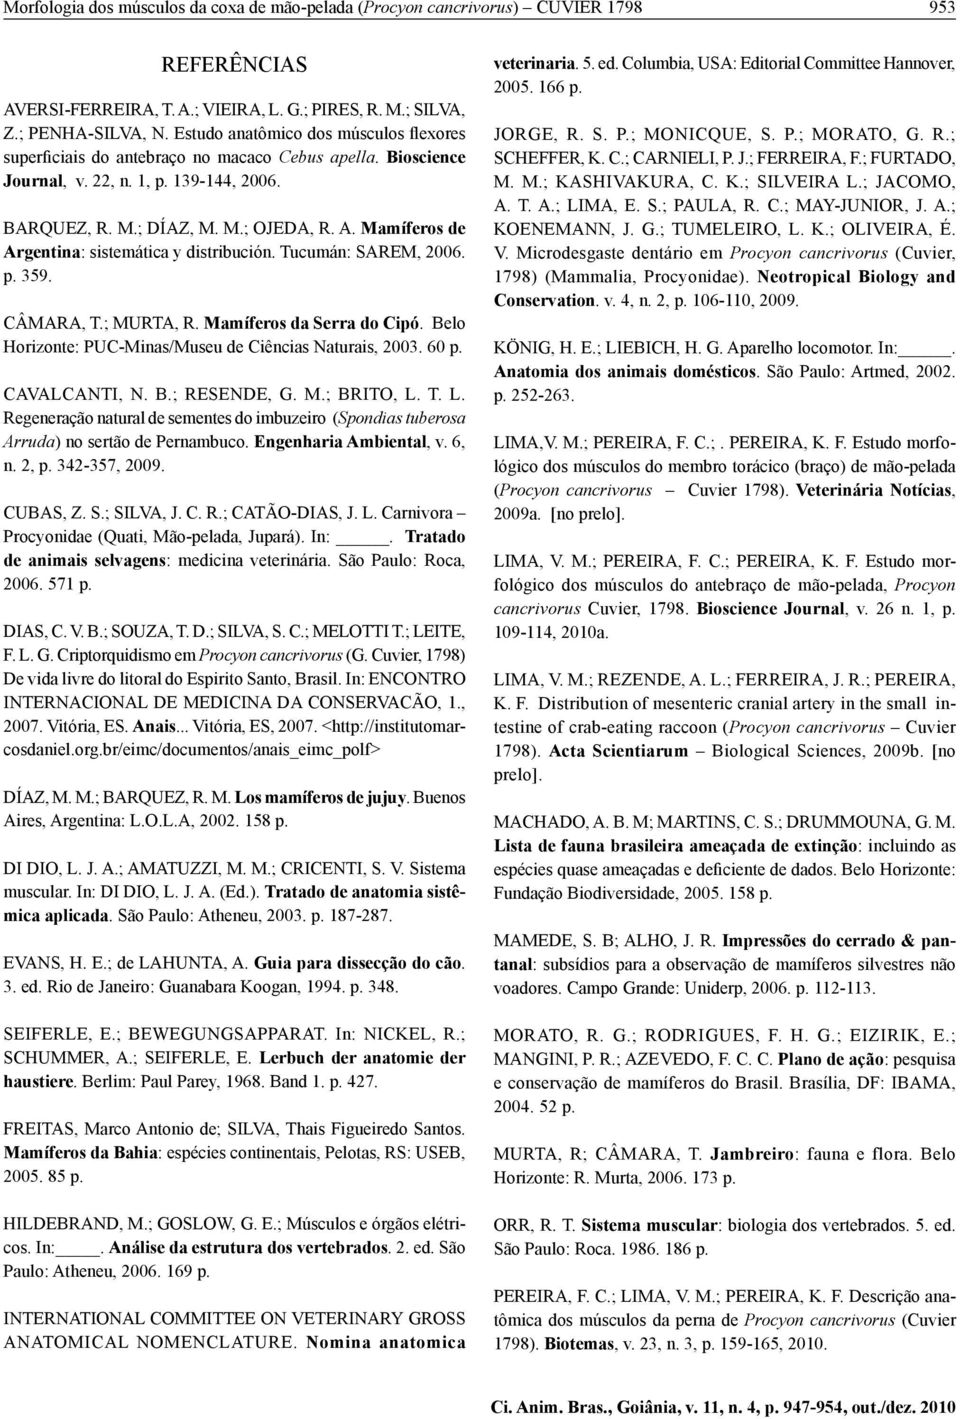 Mamíferos de Argentina: sistemática y distribución. Tucumán: SAREM, 2006. p. 359. CÂMARA, T.; MURTA, R. Mamíferos da Serra do Cipó. Belo Horizonte: PUC-Minas/Museu de Ciências Naturais, 2003. 60 p.